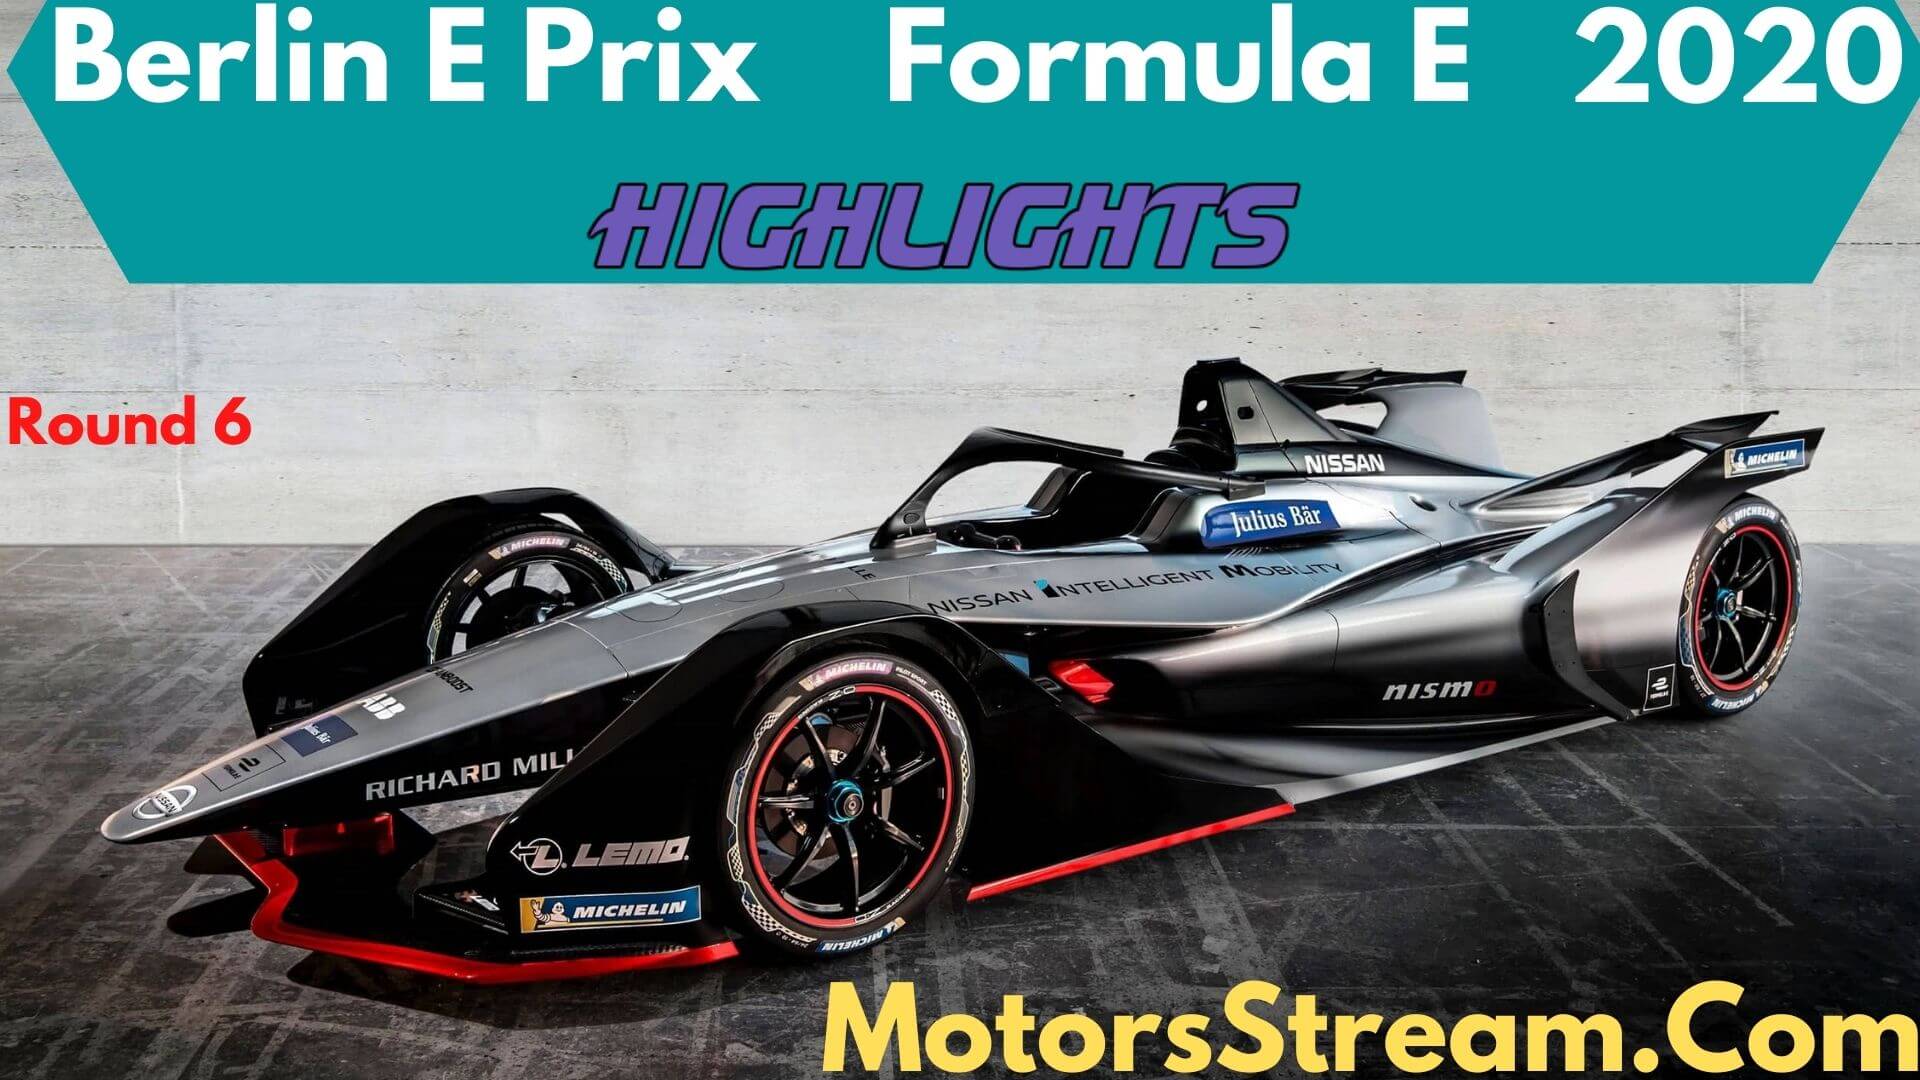 Berlin E Prix Round 6 Highlights 2020 Formula E